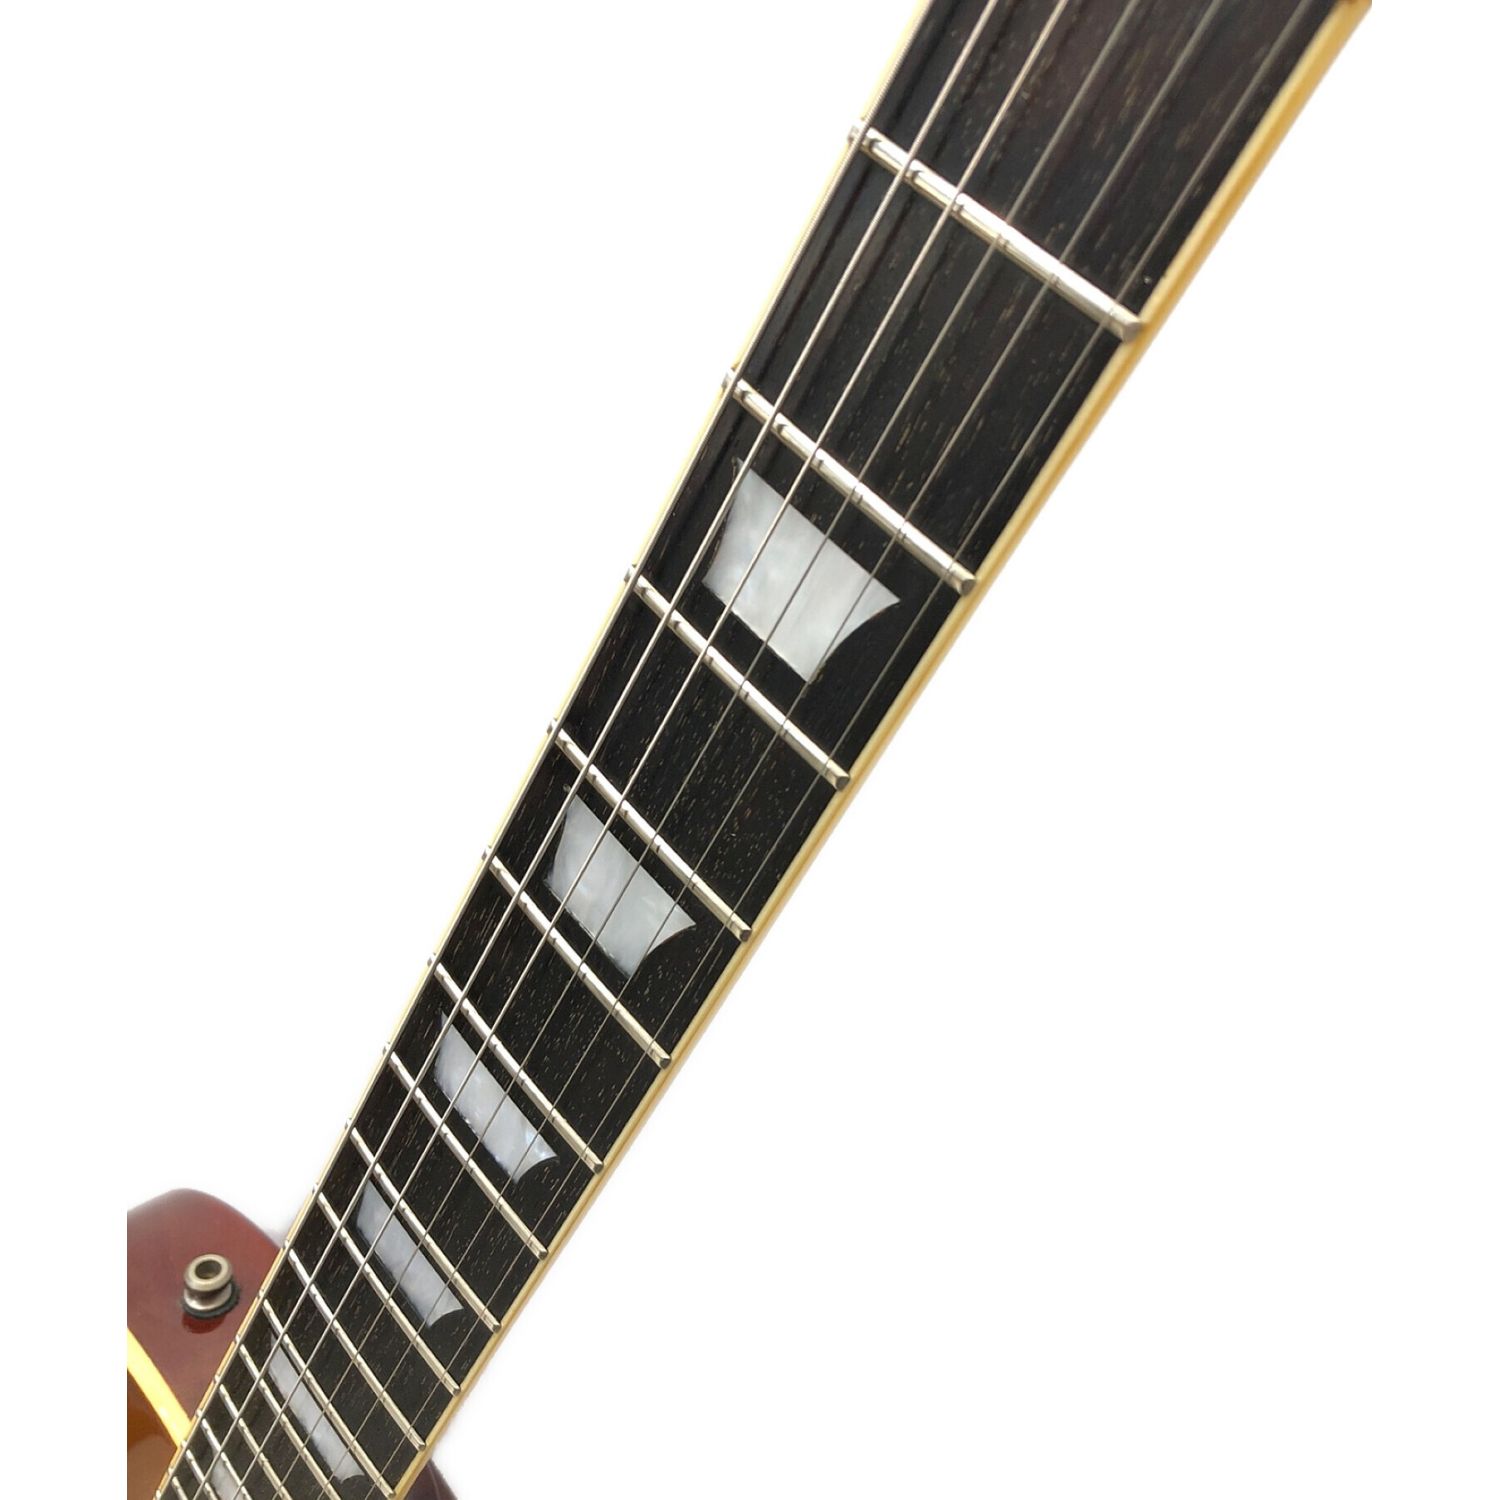 Tokai (トーカイ) エレキギター PU/Gibson USA 品番不明 LS55 レス 